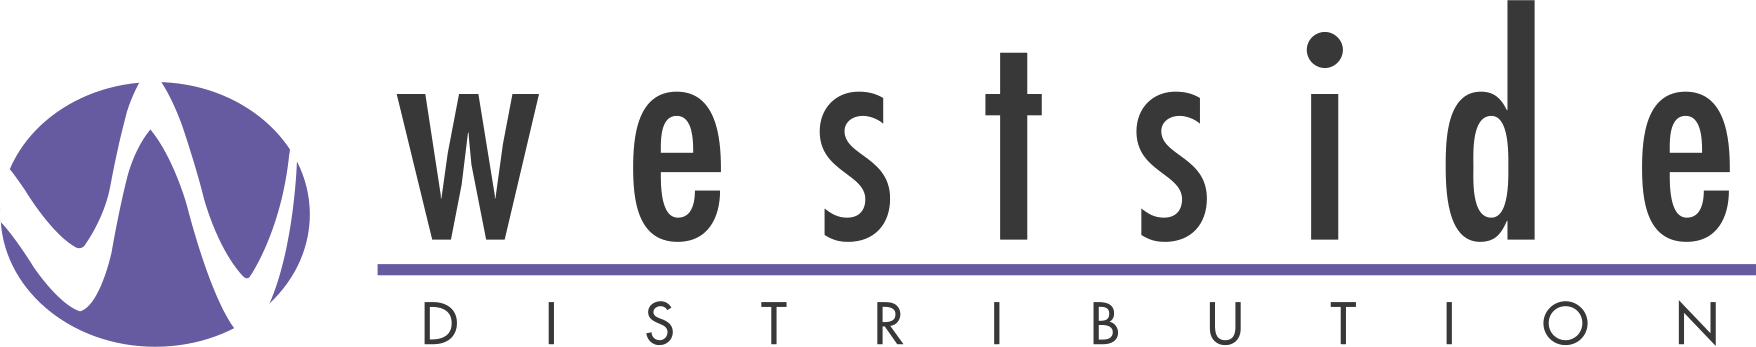 Westside Logo - Westside Logo Transparent - Westside Distribution